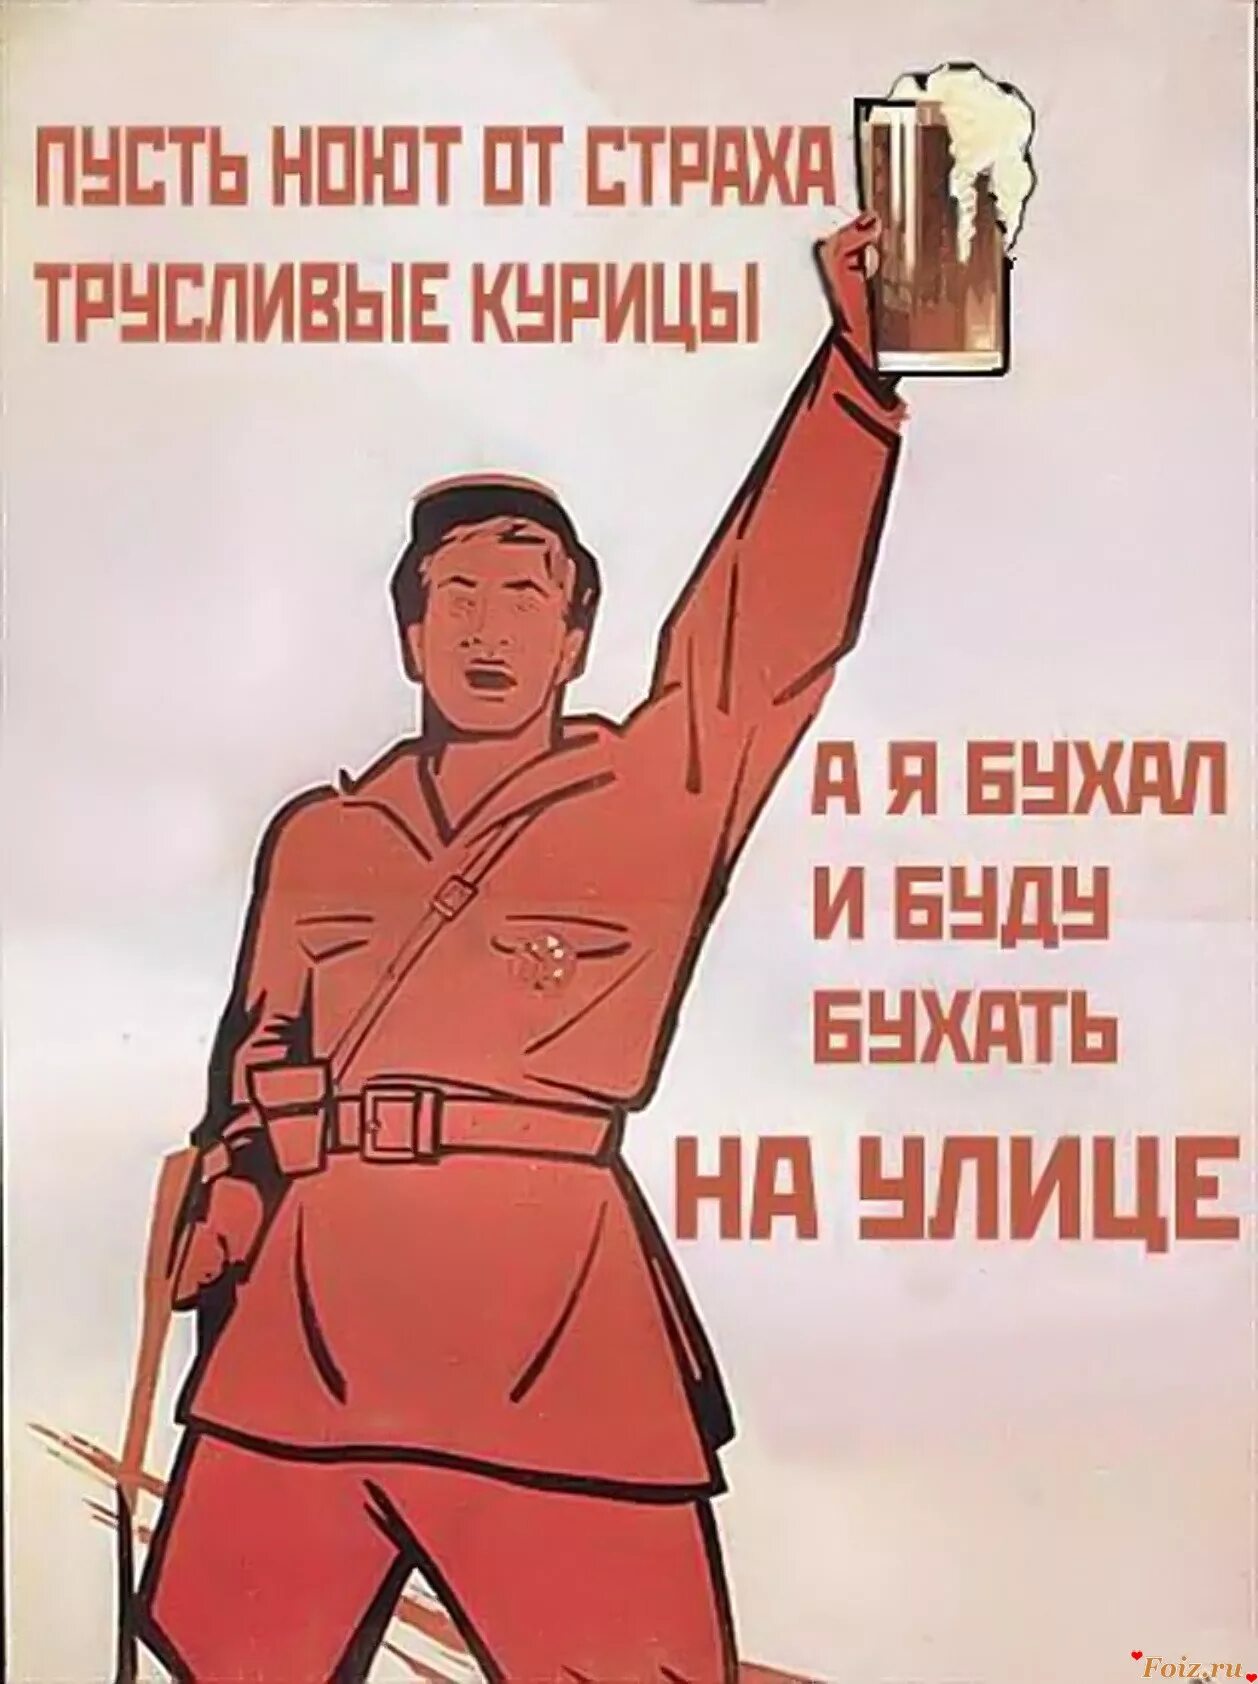 Прикольные слоганы. Прикольные плакаты. Советские плакаты. Плакаты с лозунгами. Прикольные советские плакаты.